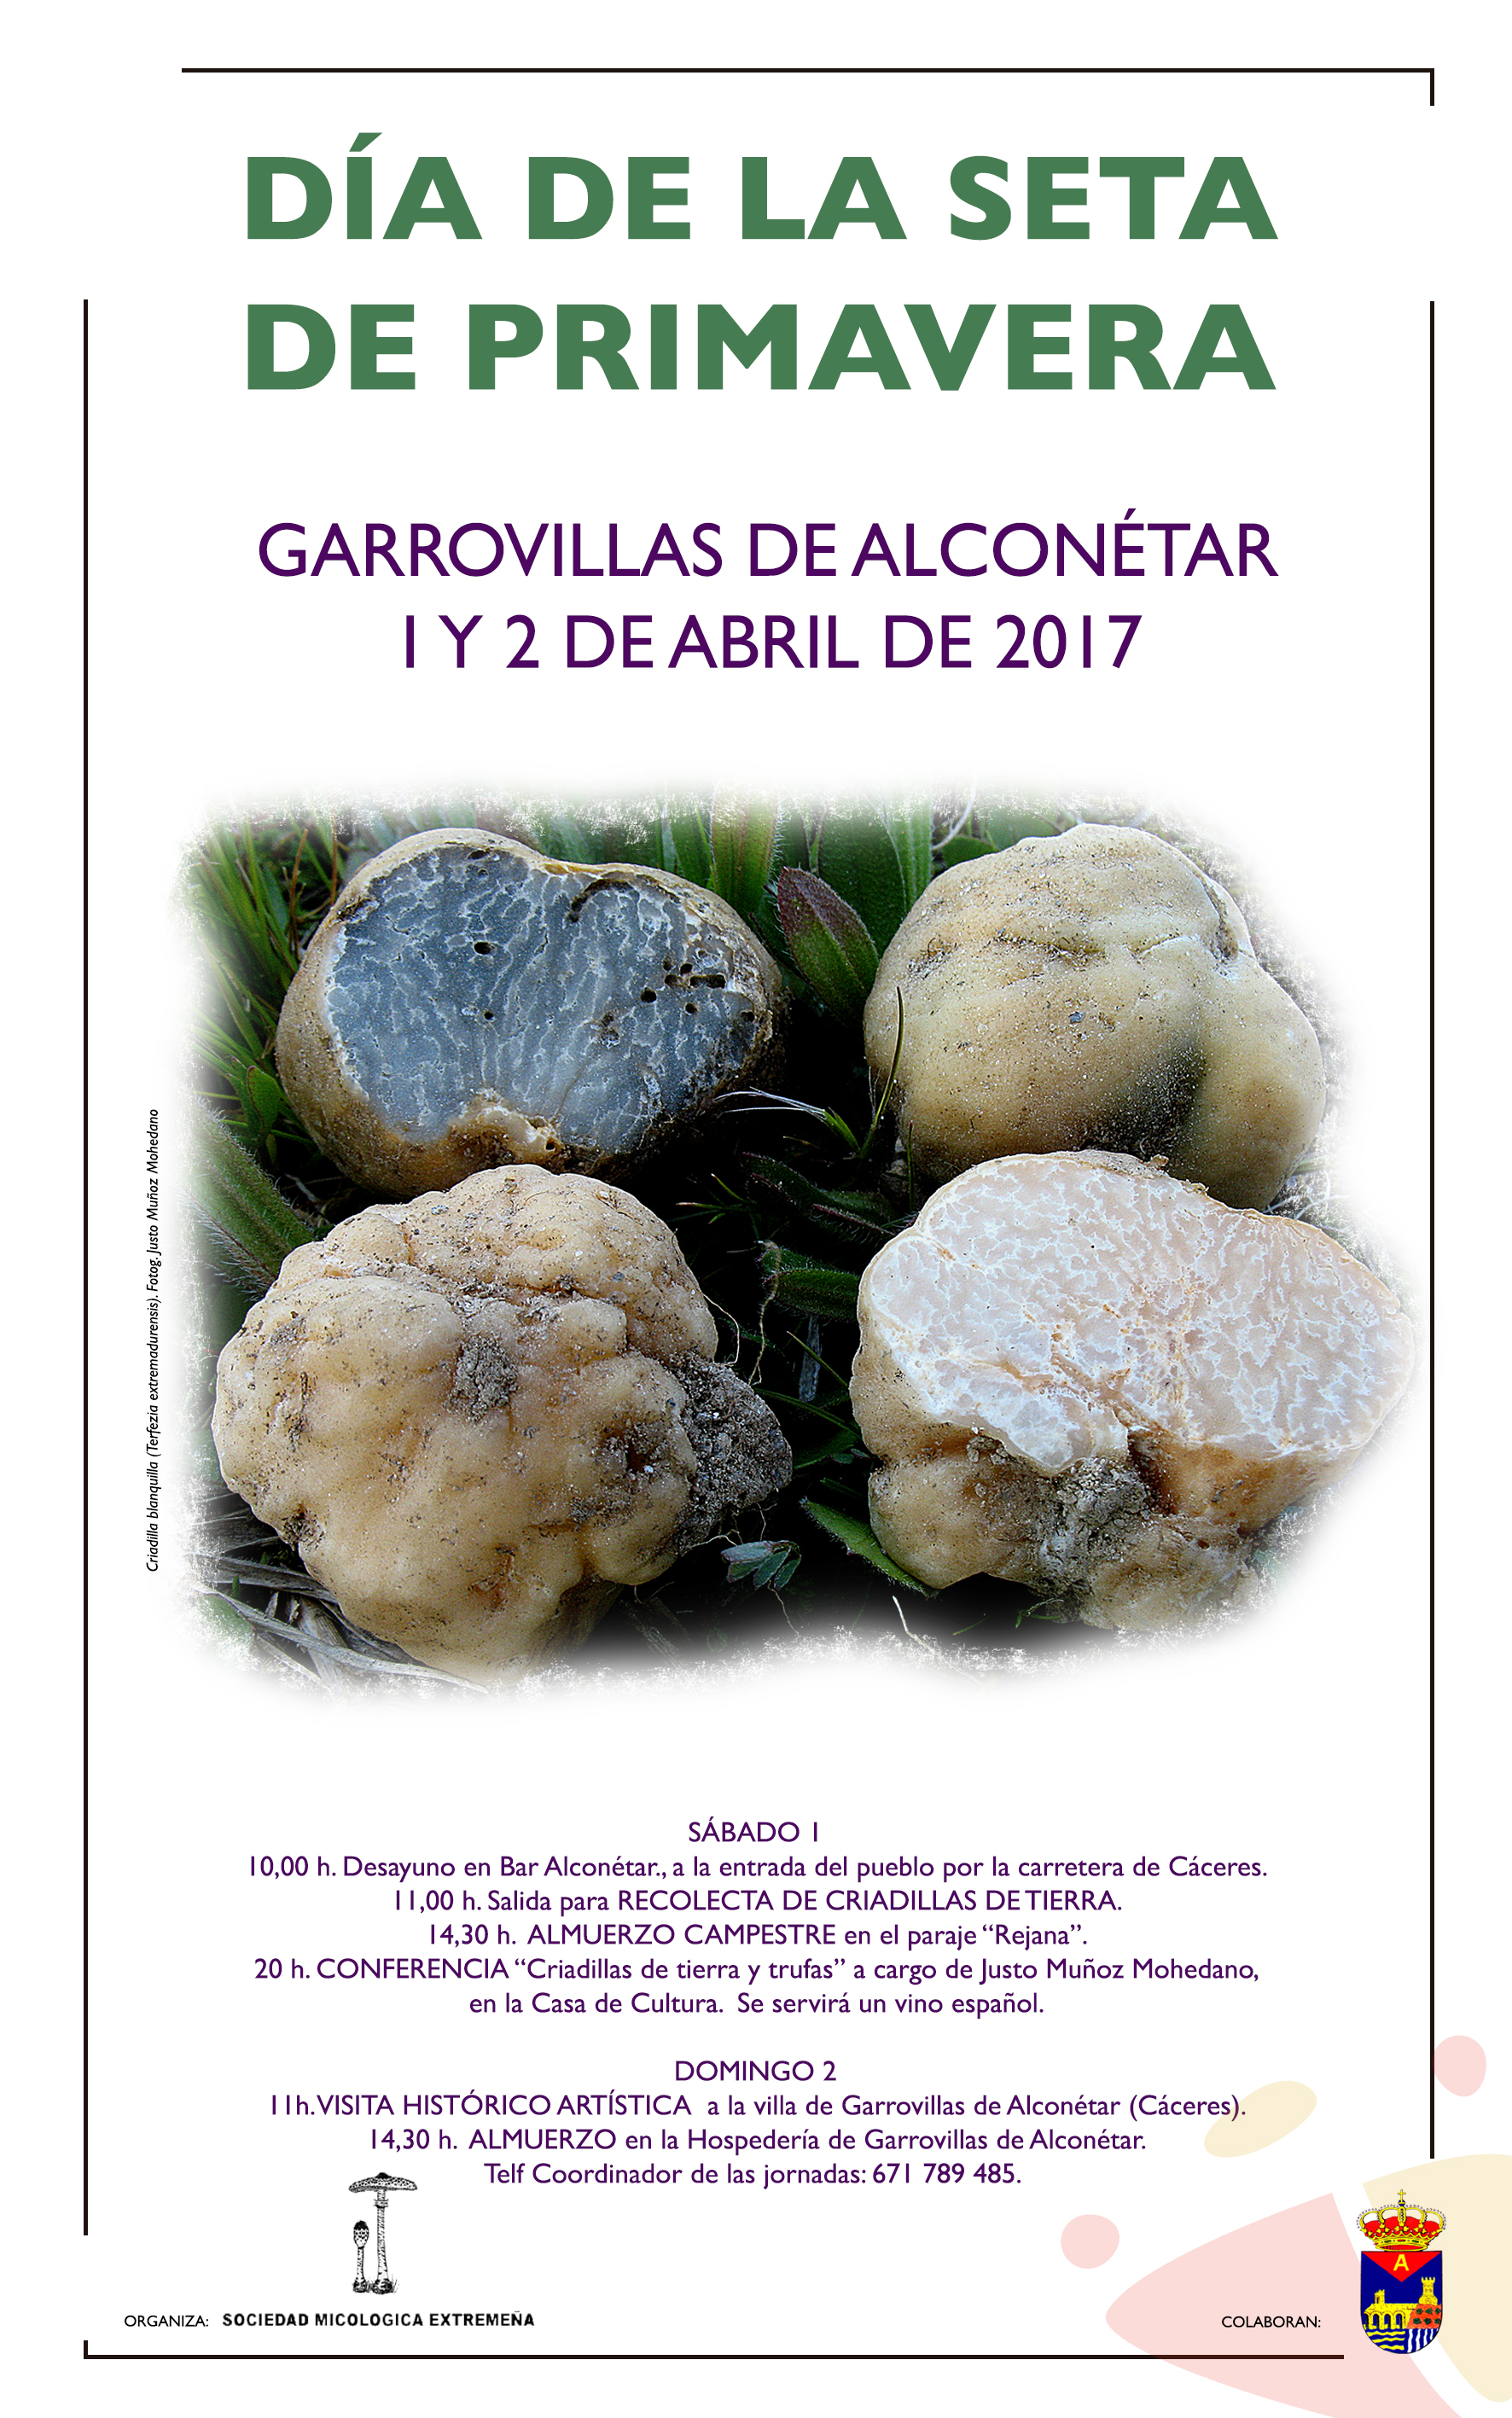 Día de la Seta de Primavera, en Garrovillas de Alconétar (Cáceres). 1 y 2 de abril de 2017